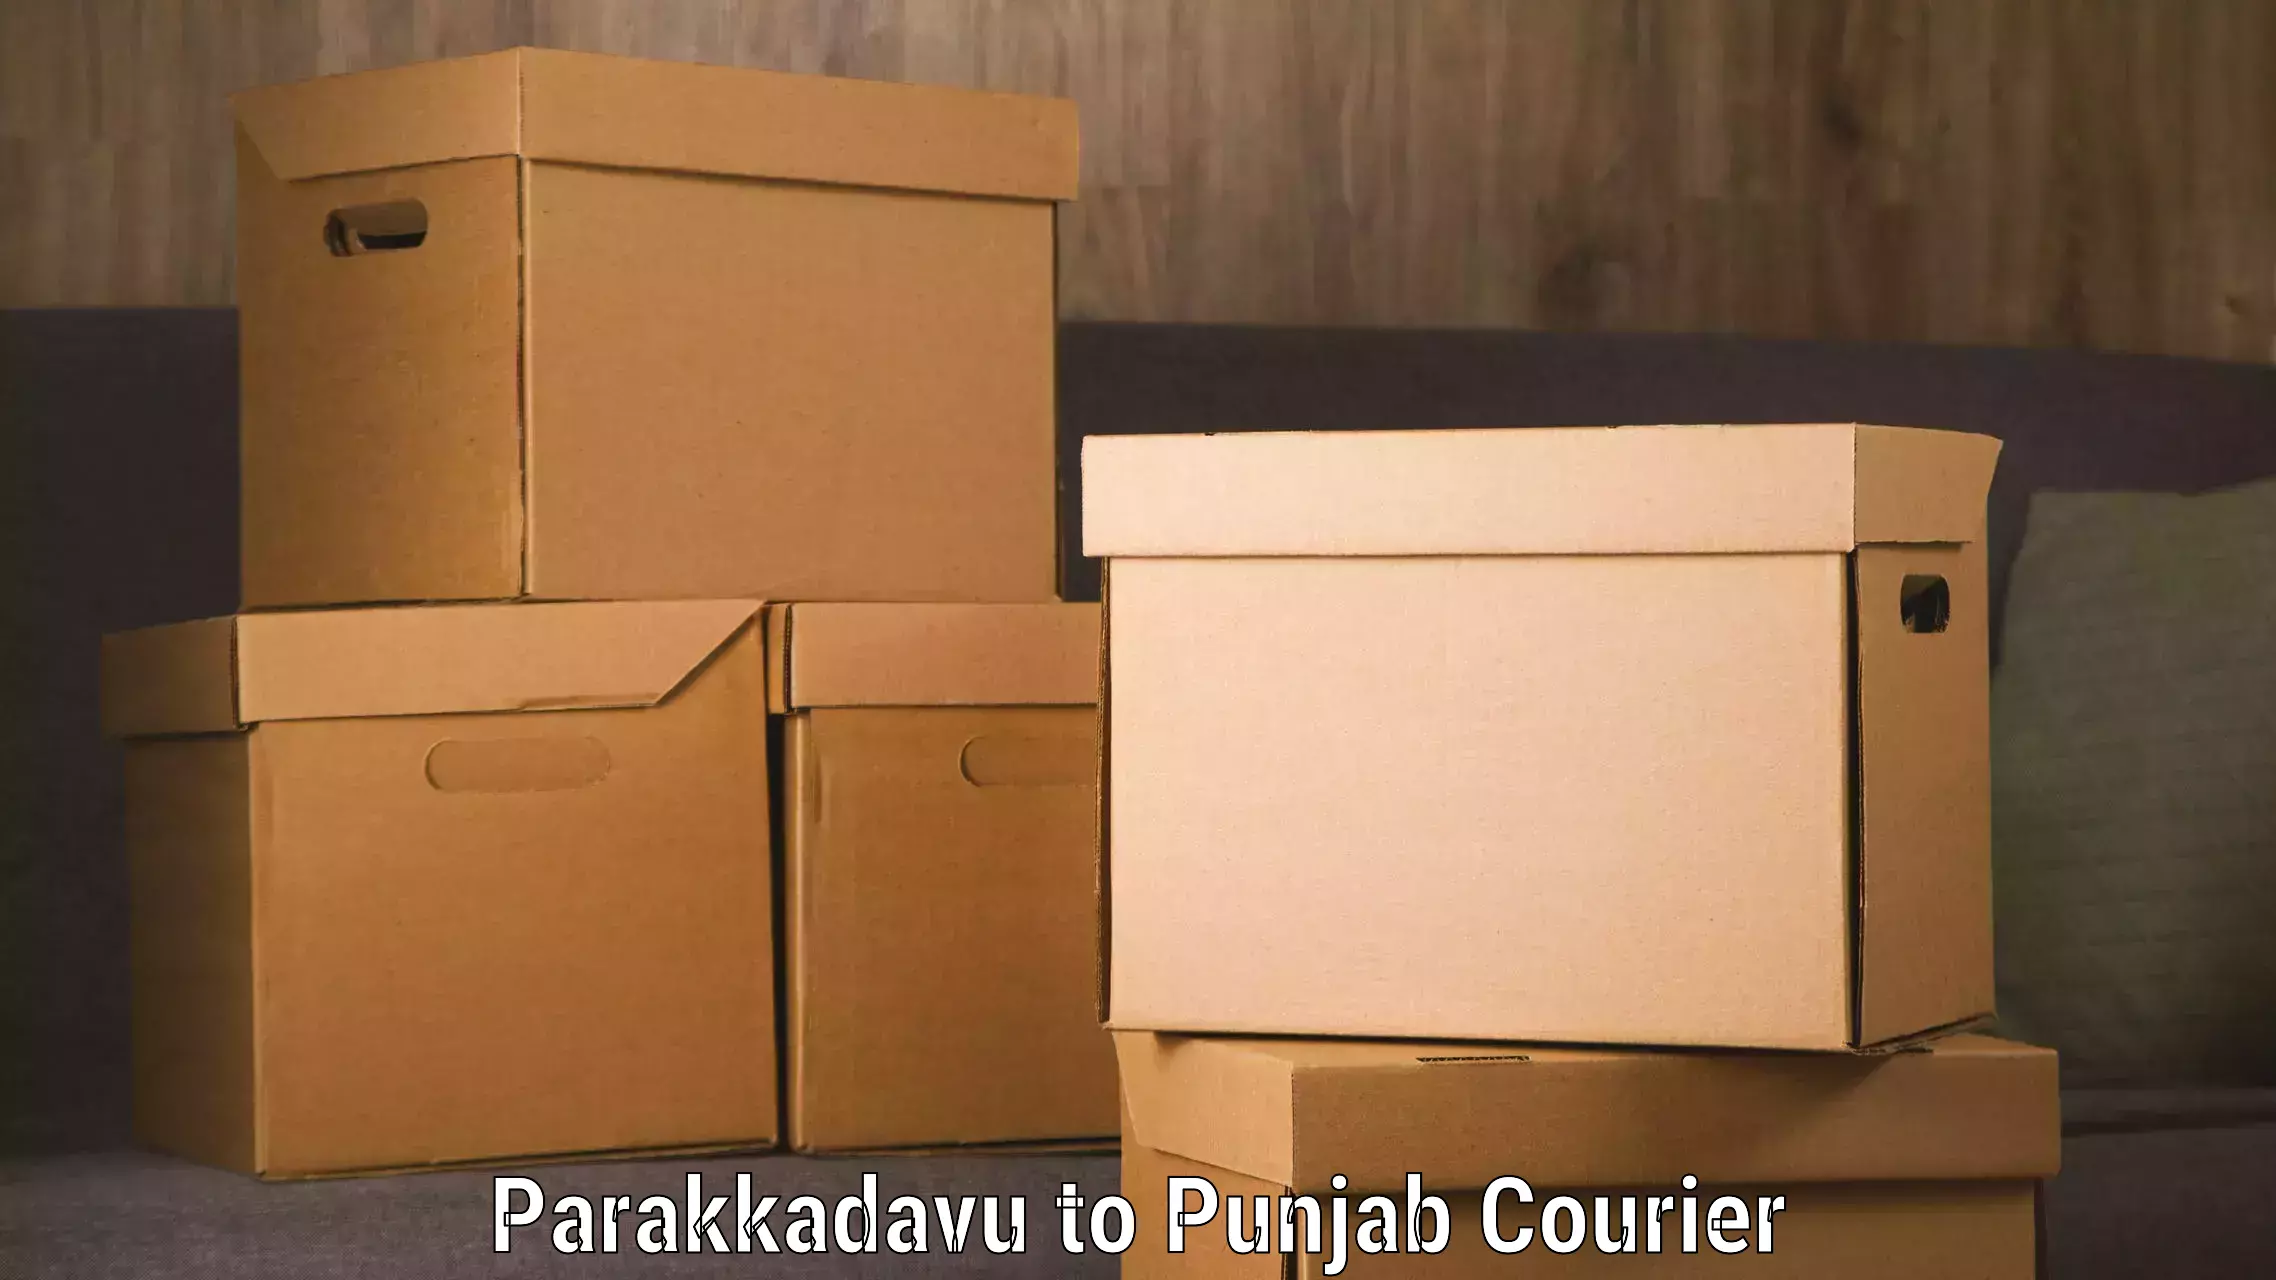 Comprehensive shipping network Parakkadavu to Kotkapura